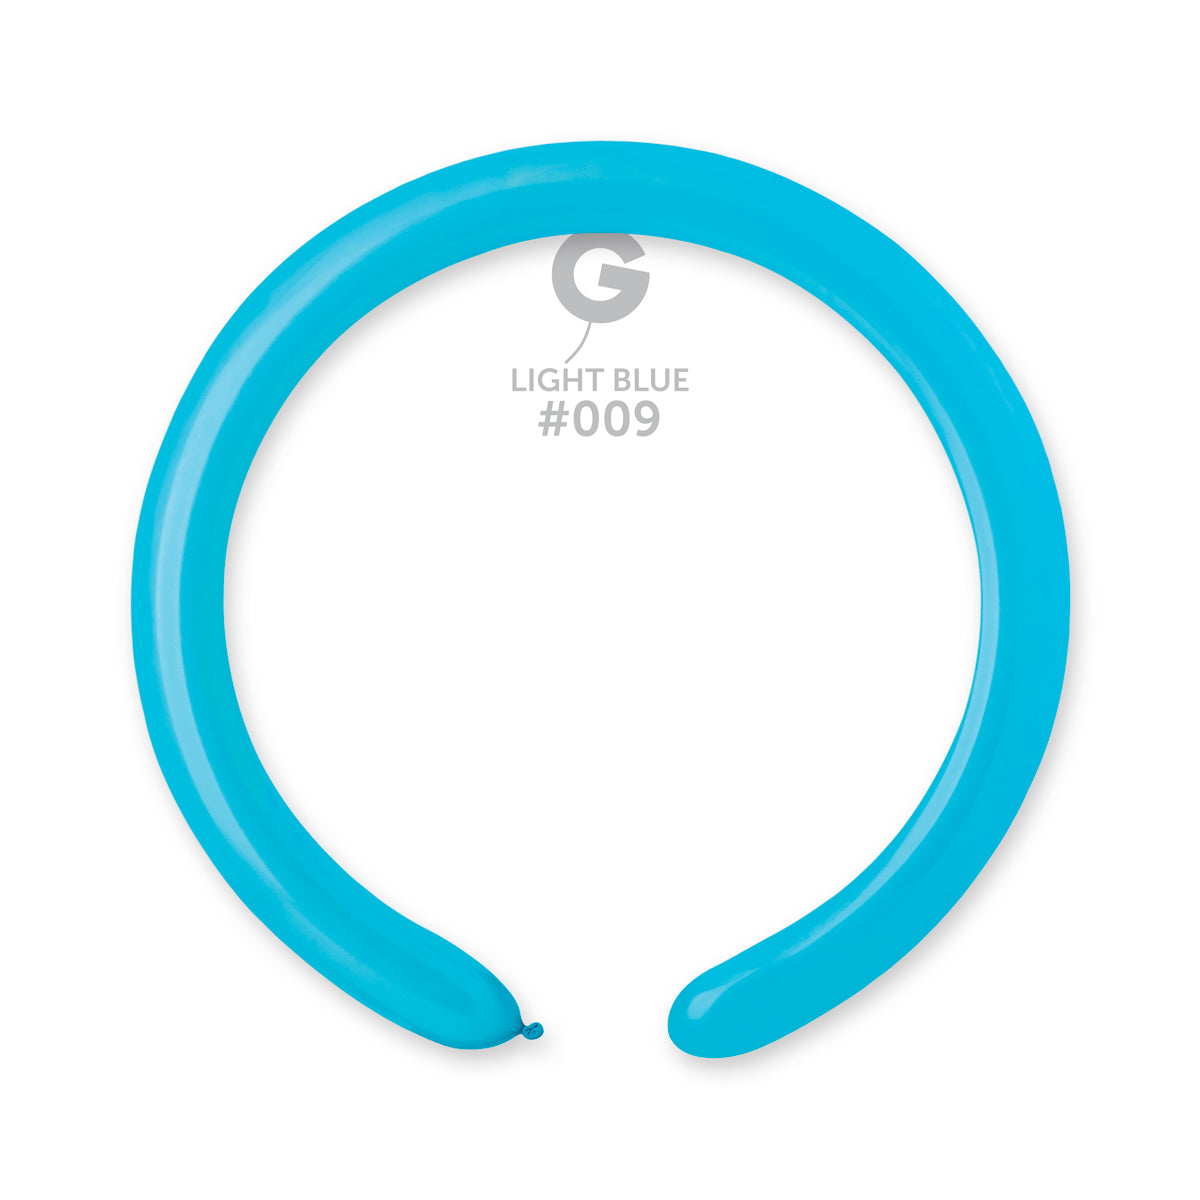 Globo moldeable 2” D4 Azul Cielo "Light Blue 009" 100uds